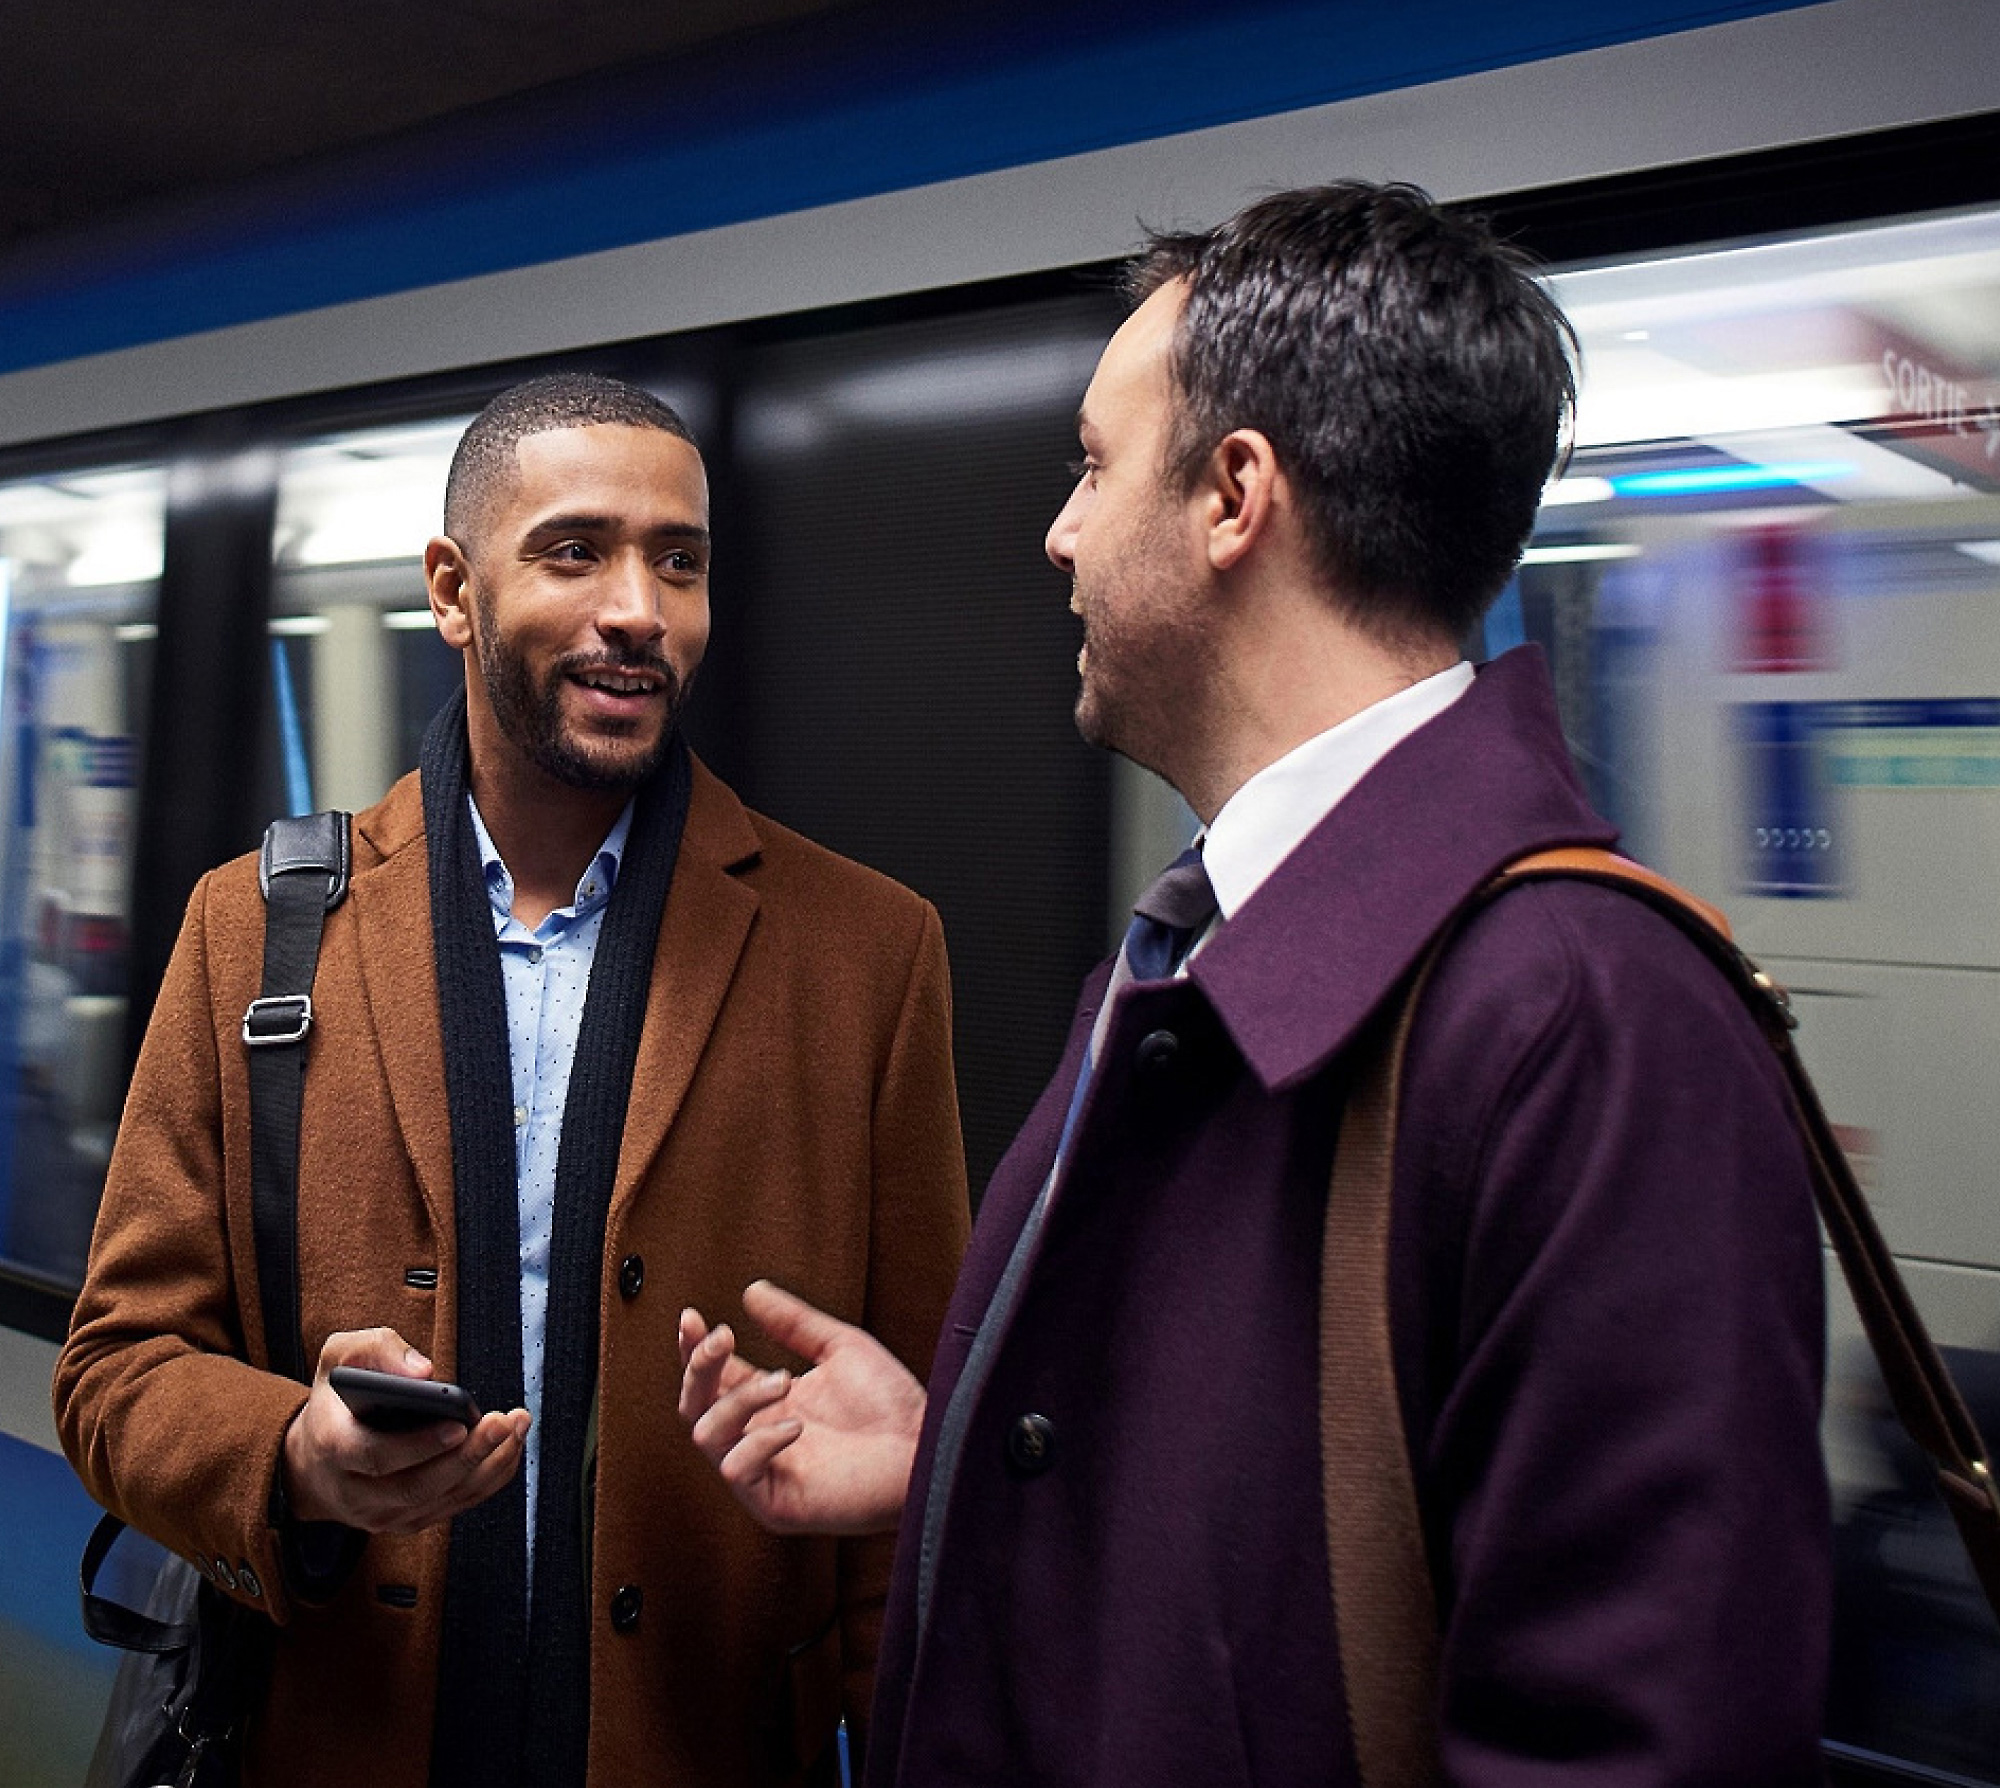 Metro platformunda birinin elinde akıllı telefon bulunan, konuşan iki adam ve arkalarında hareket halinde bulanık görünen bir tren.